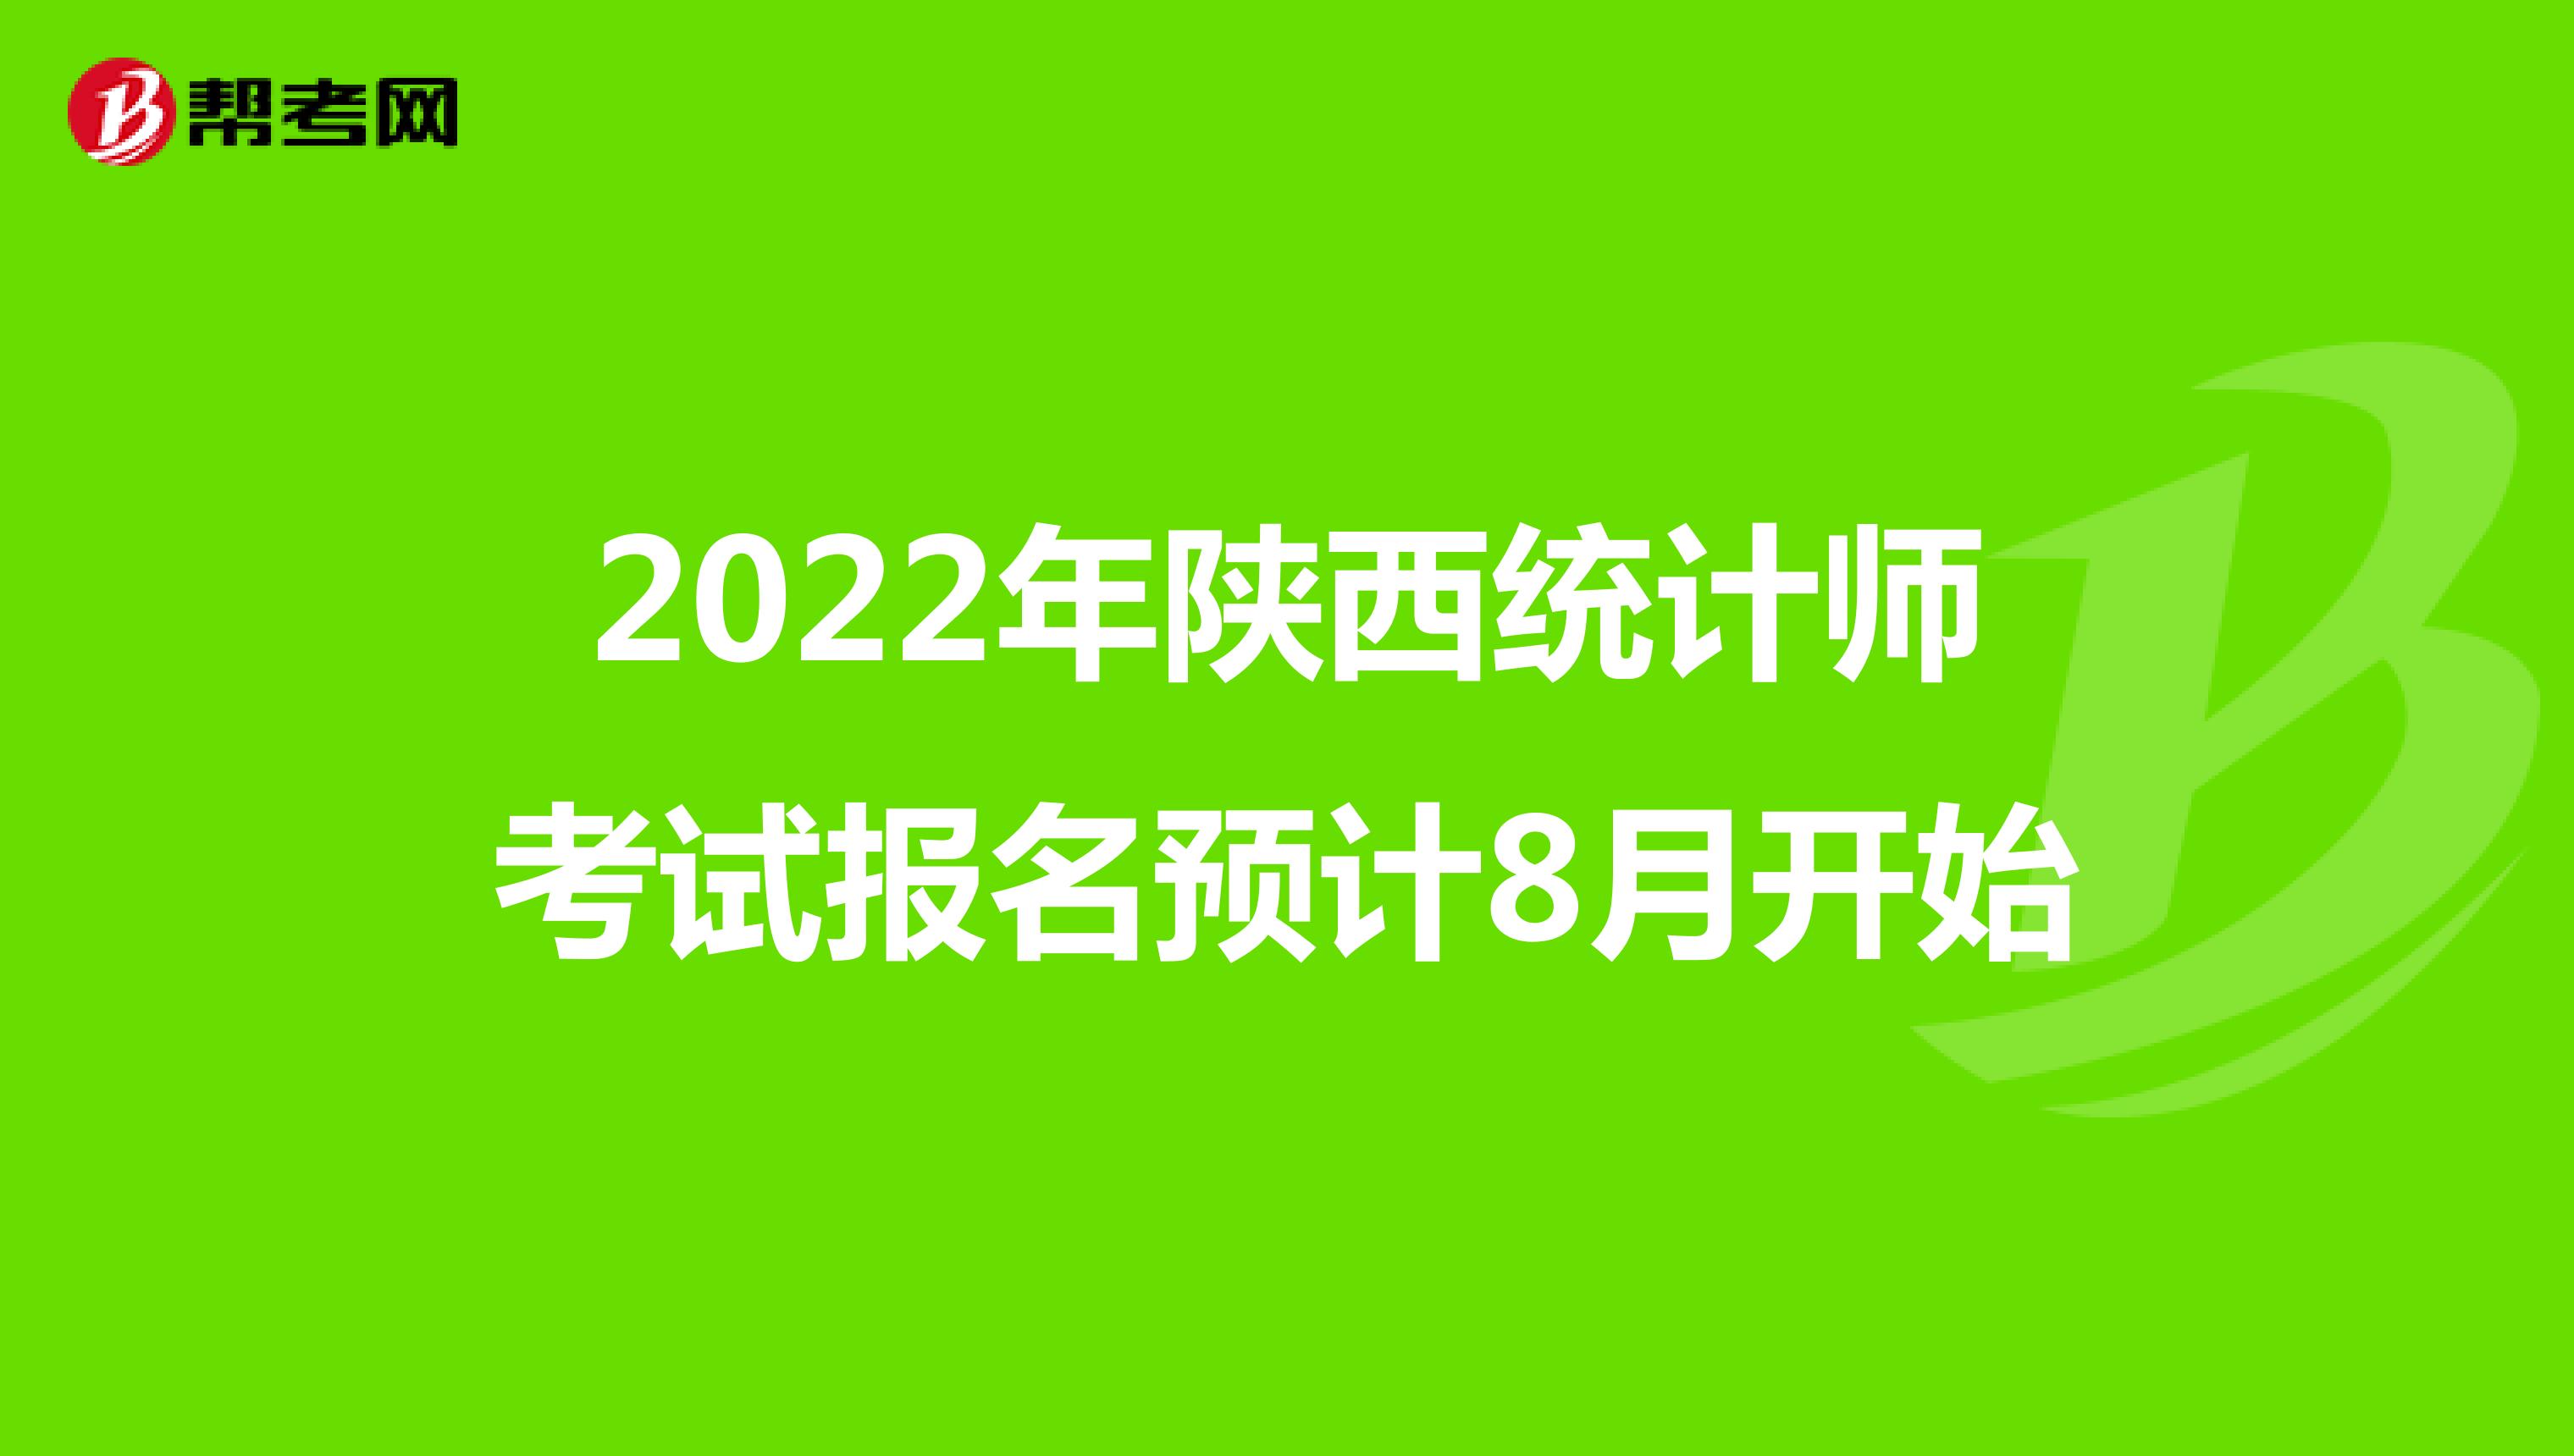 2022年陕西统计师考试报名预计8月开始